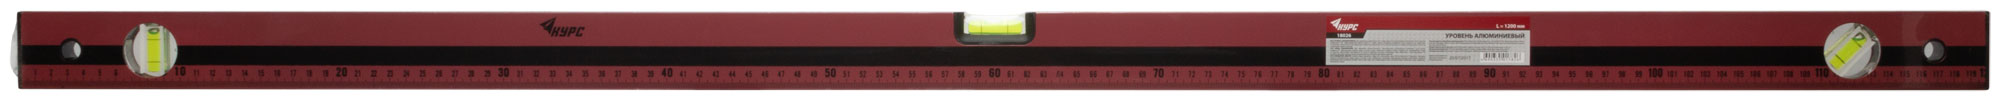 Уровень "Оптима", 3 глазка, красный корпус, фрезерованная рабочая грань, шкала 1200 мм